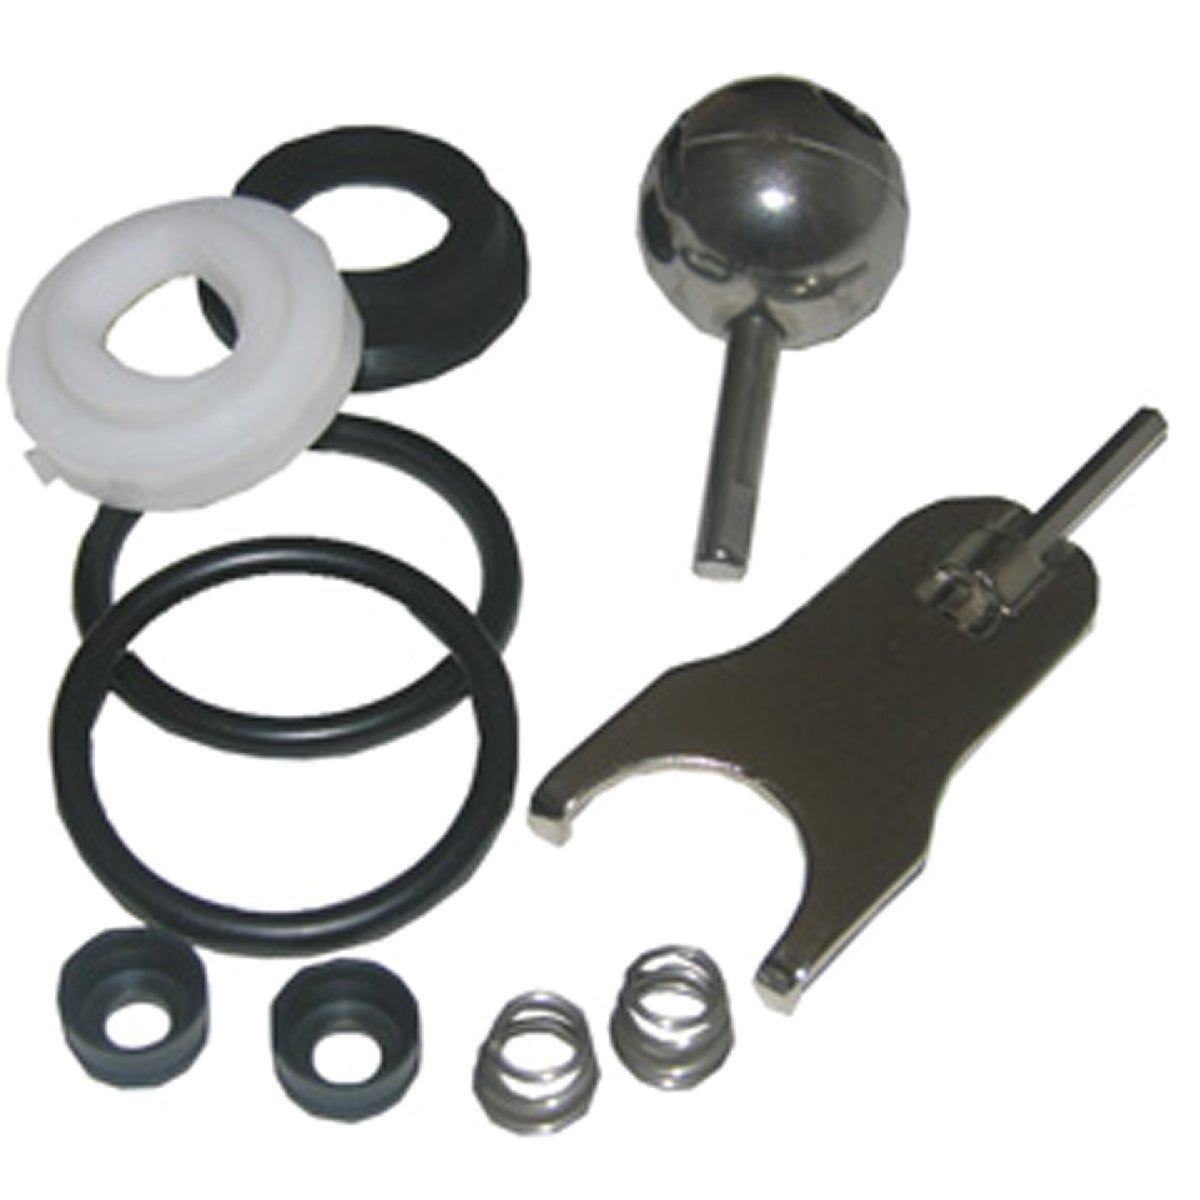 Lasco 0-2999 Lasco Kitchen & Bath Metal Lever Handle Various Parts Faucet Repair Kit 0-2999